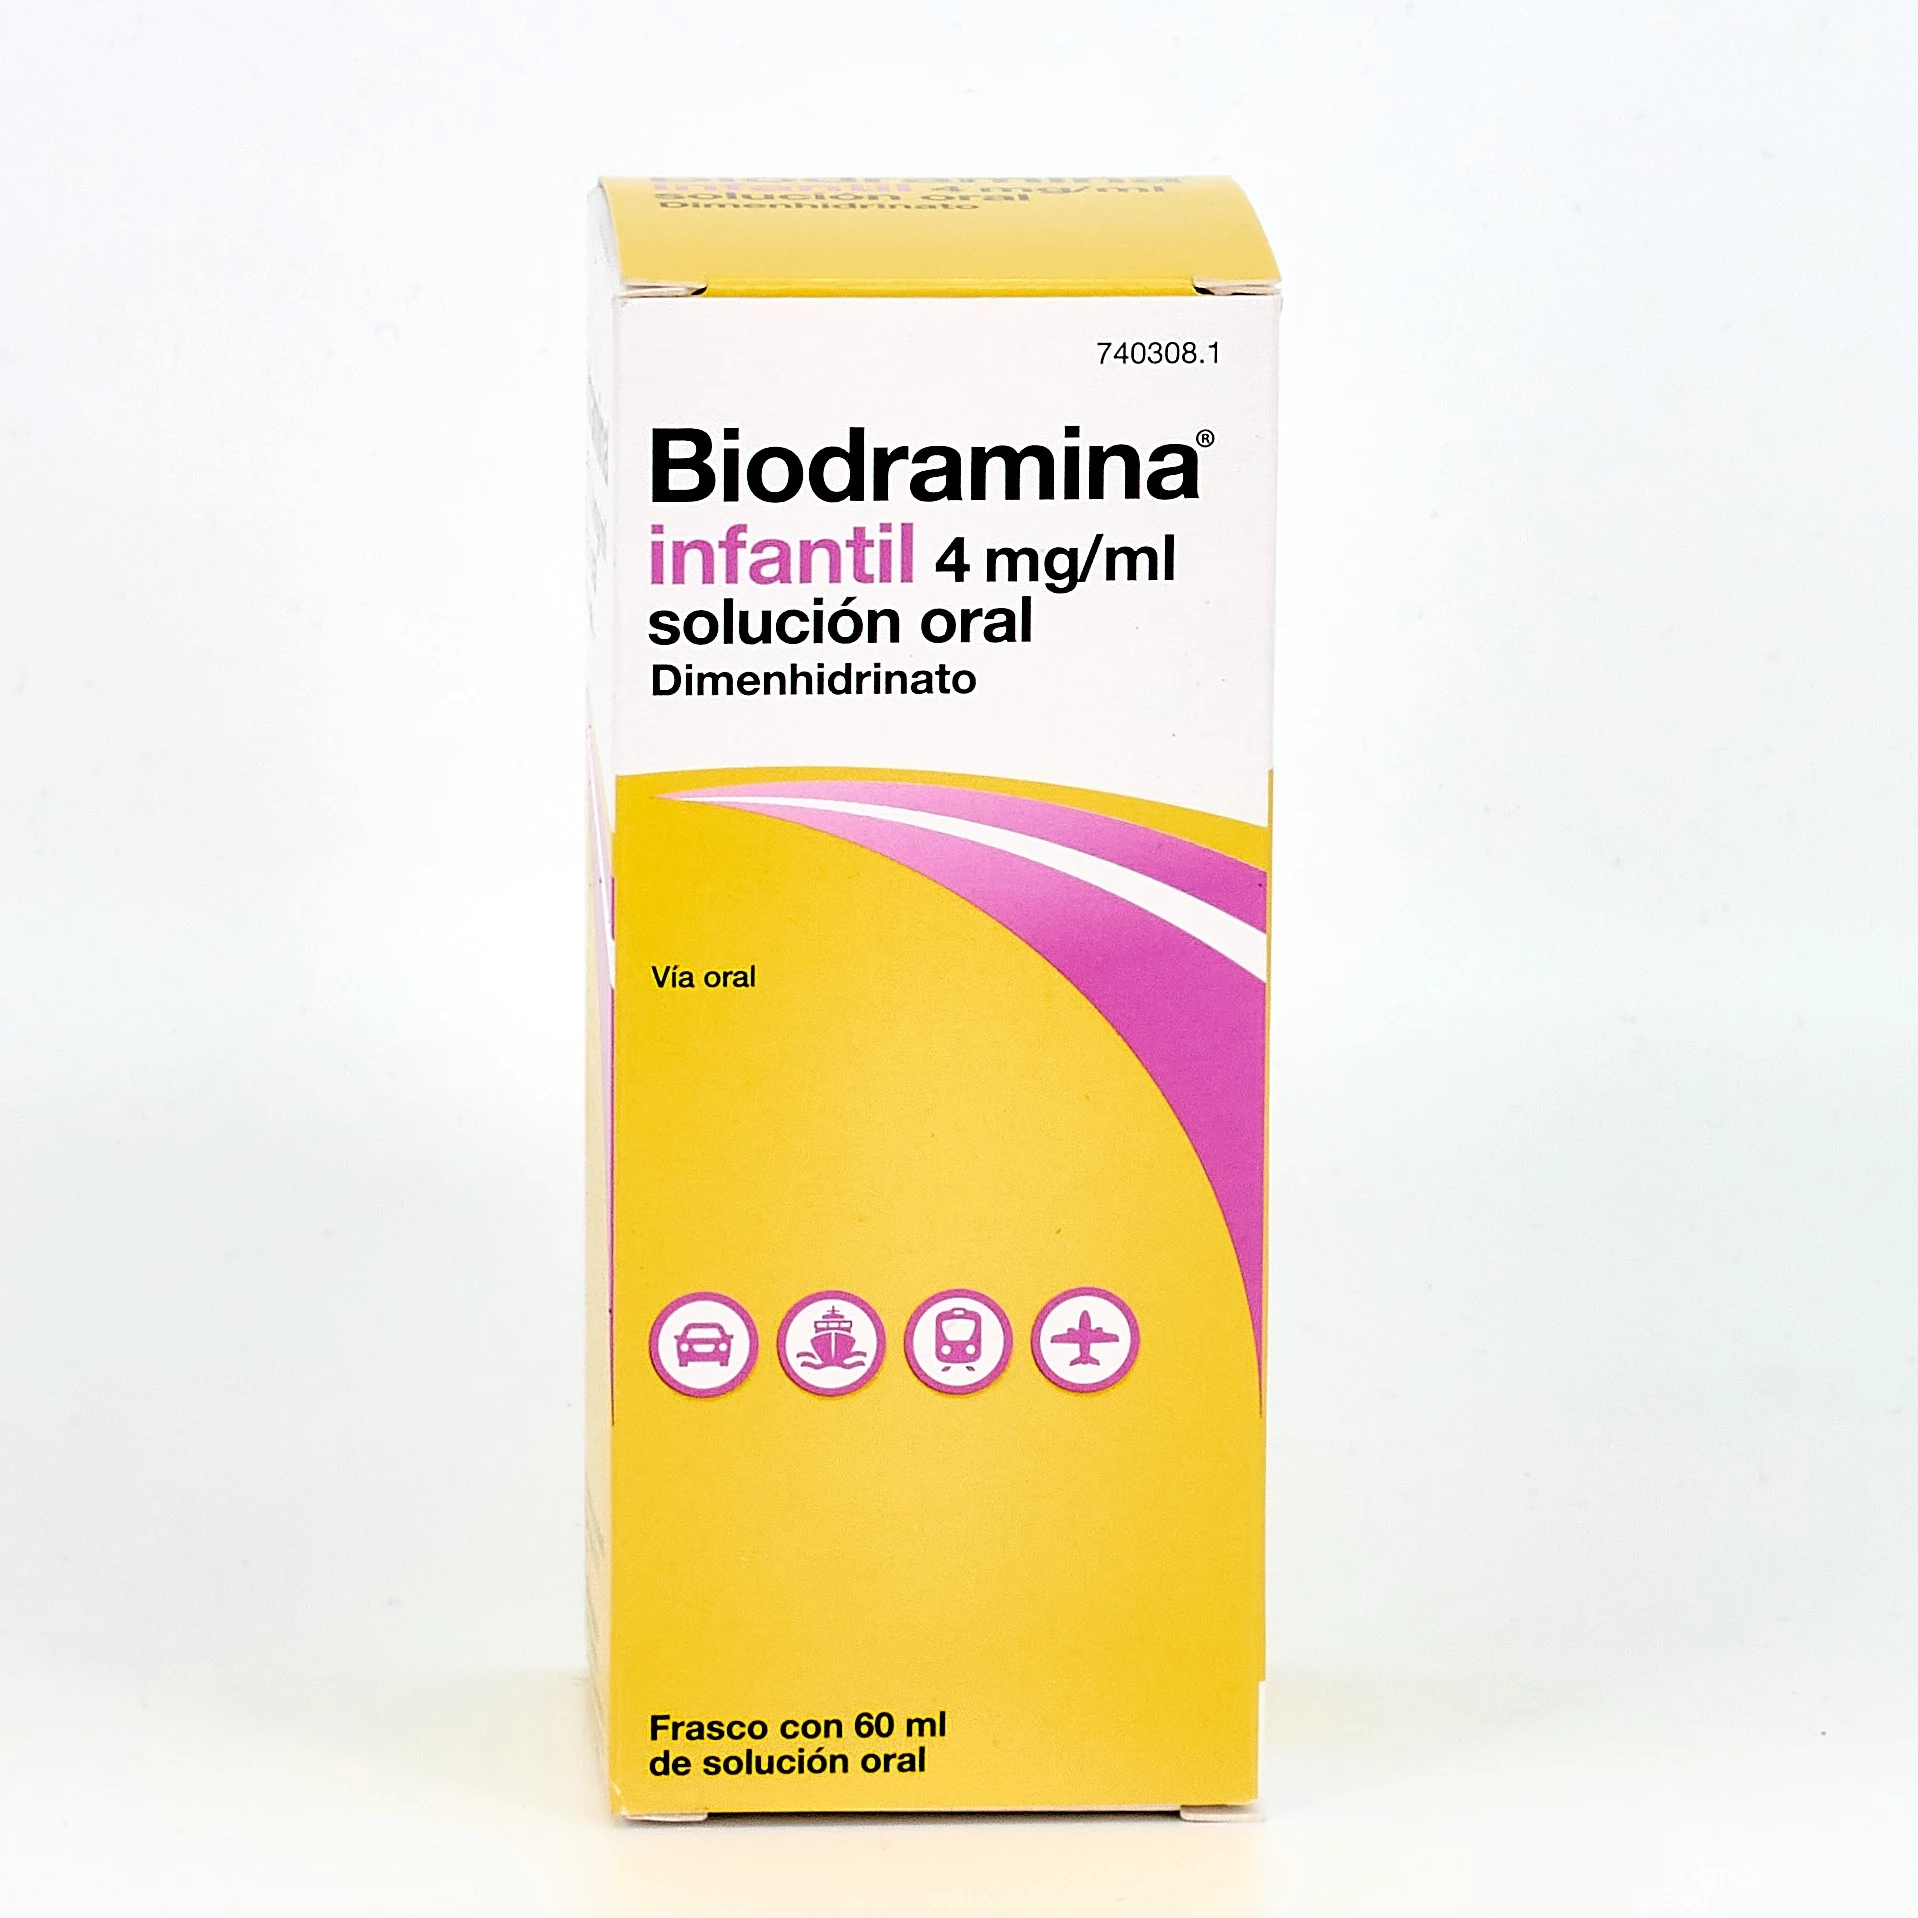 Biodramina infantil solución oral